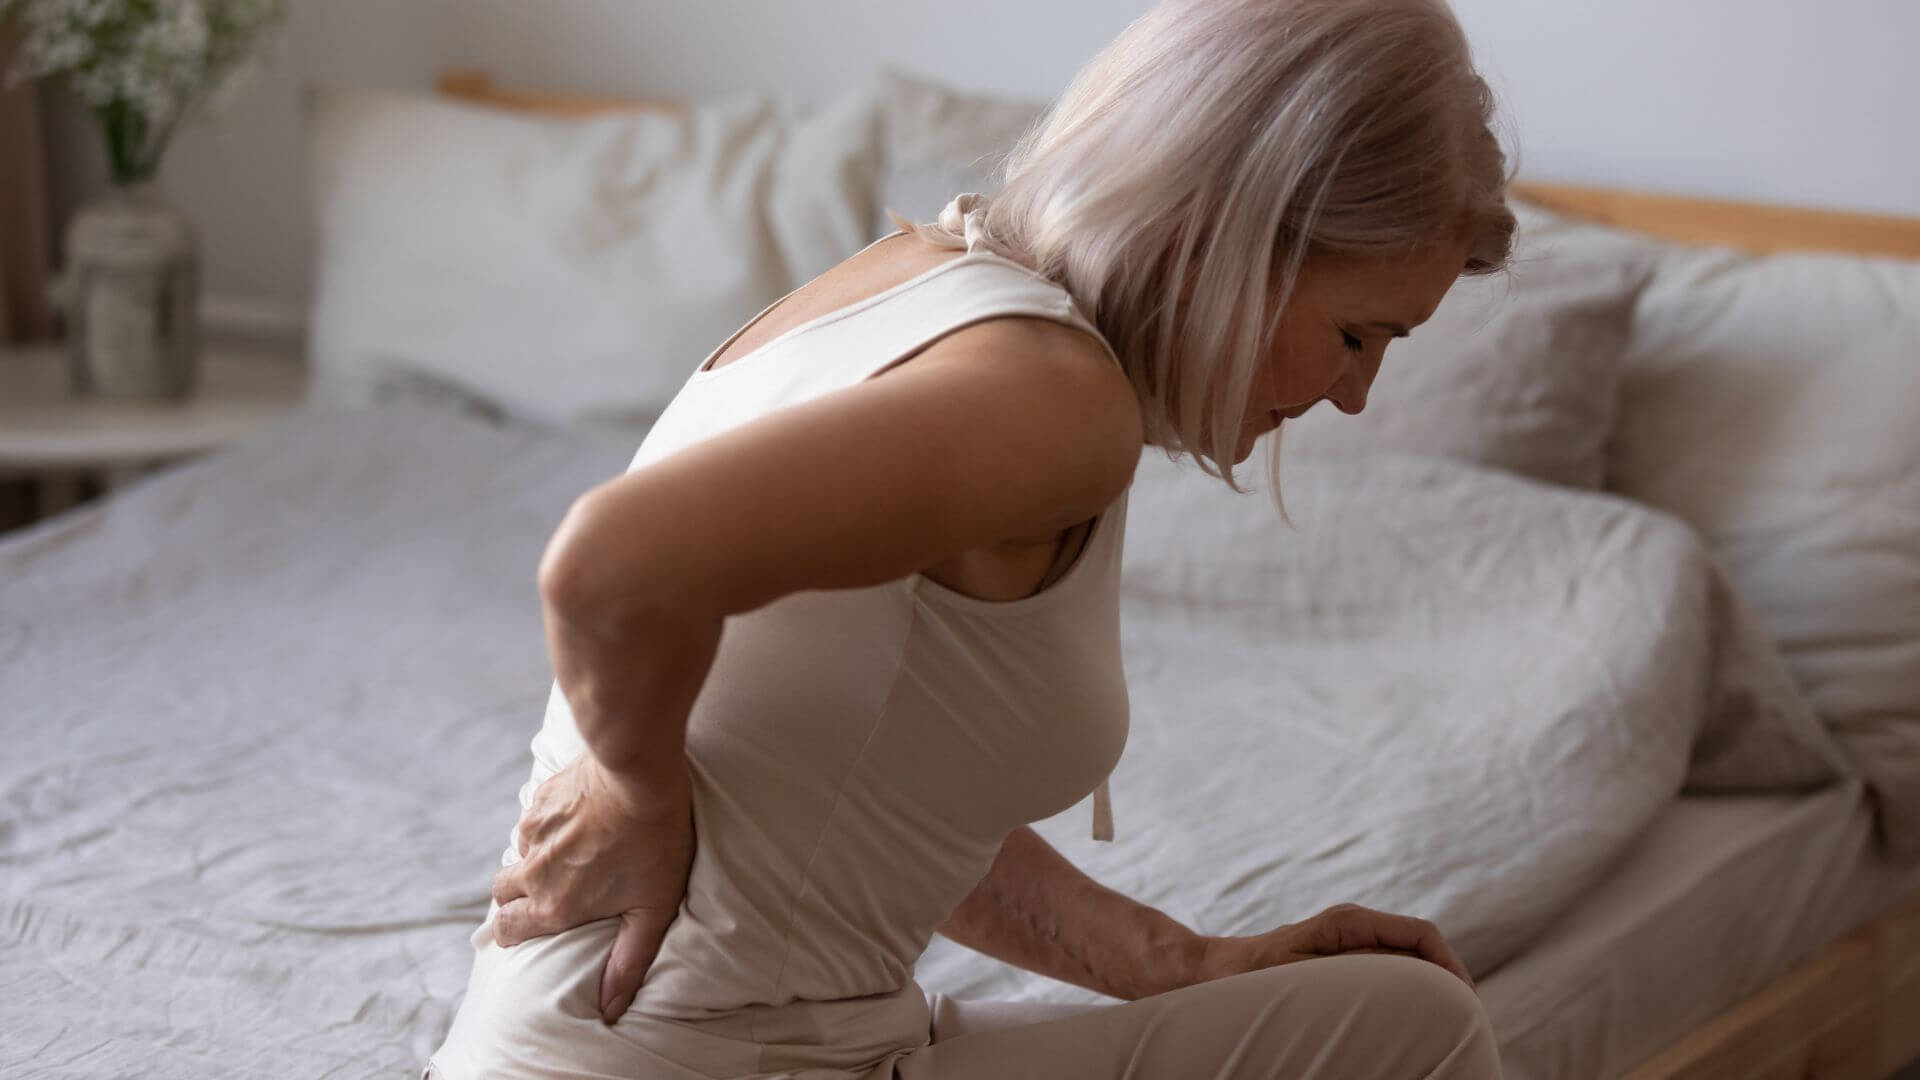 osteoporose-frau-mit-wirbelsaeulenschmerzen-sitzt-auf-bett-sanitaetshaus-wurst